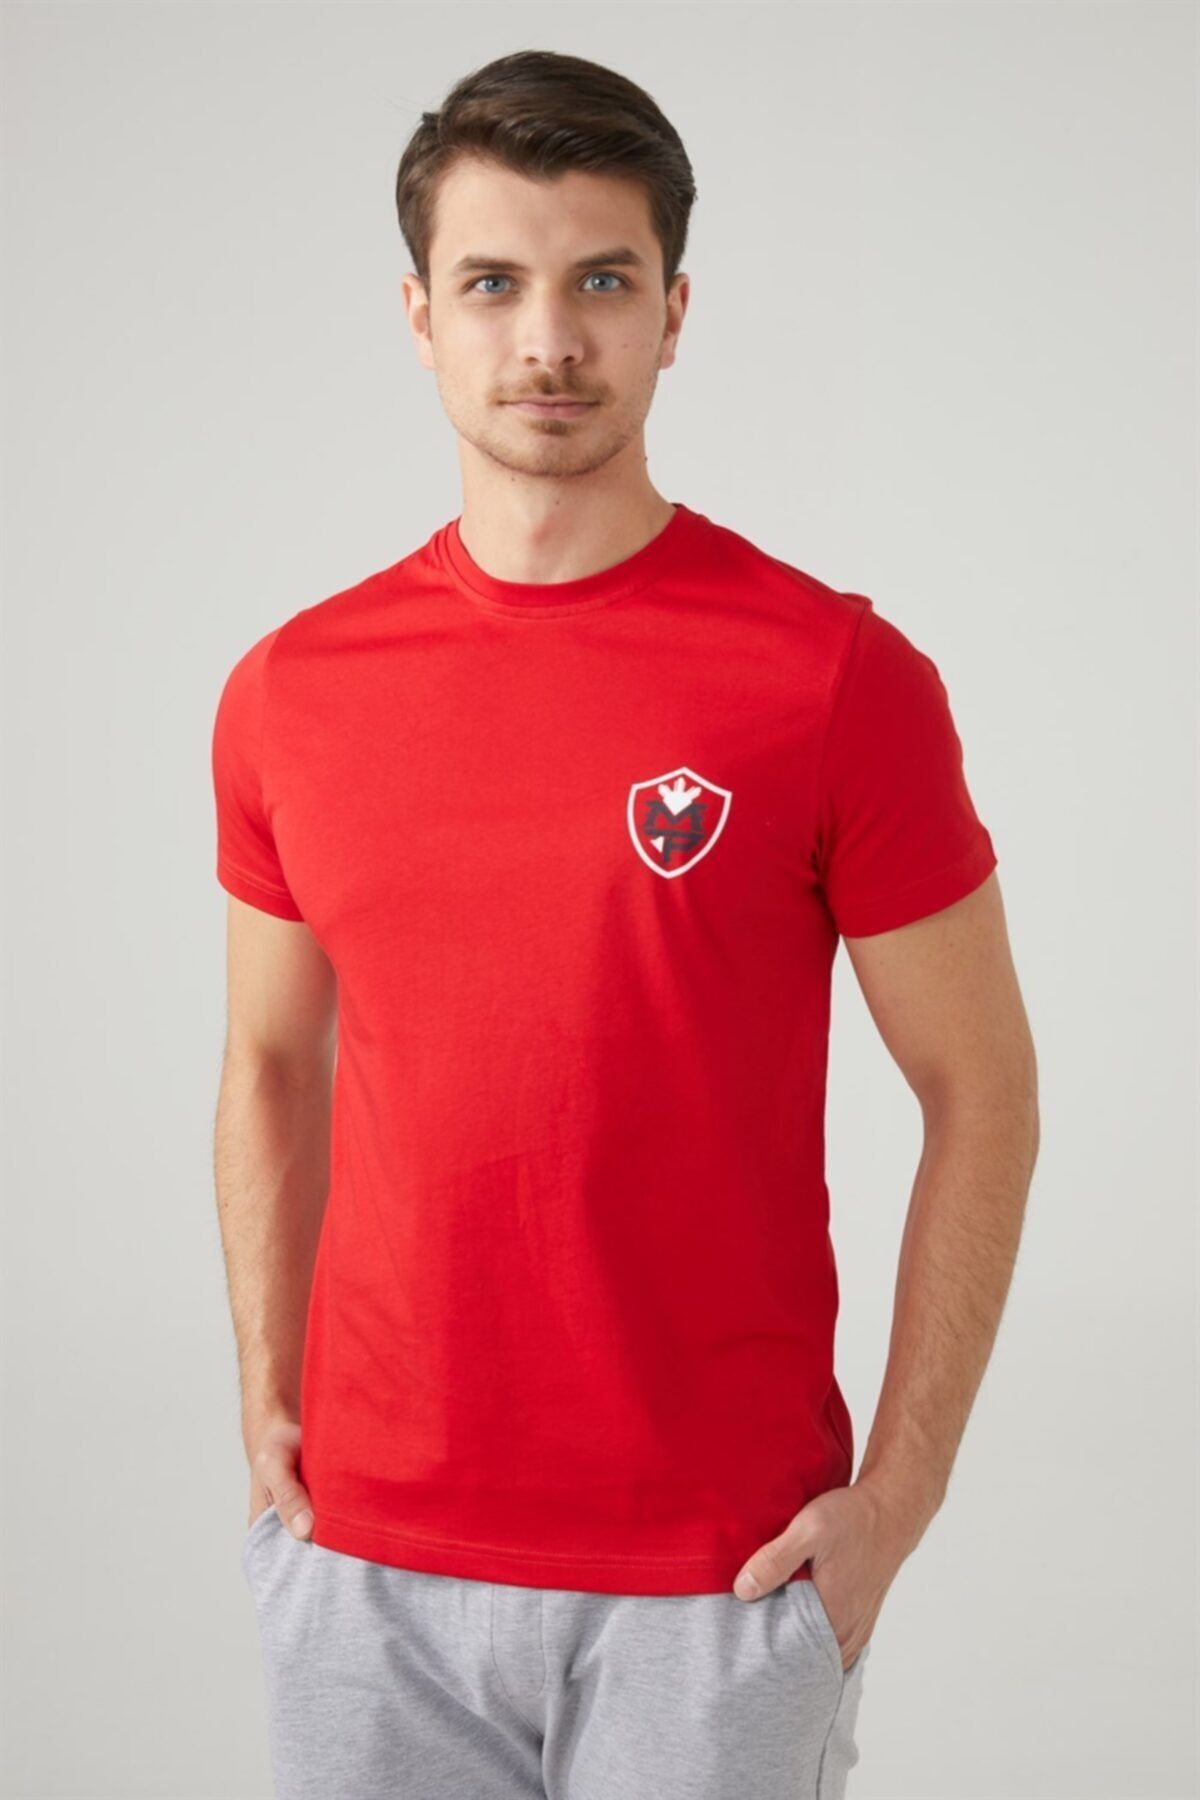 MP Erkek Bisiklet Yaka Kırmızı T-shirt Tekstil 201-5006mr 150